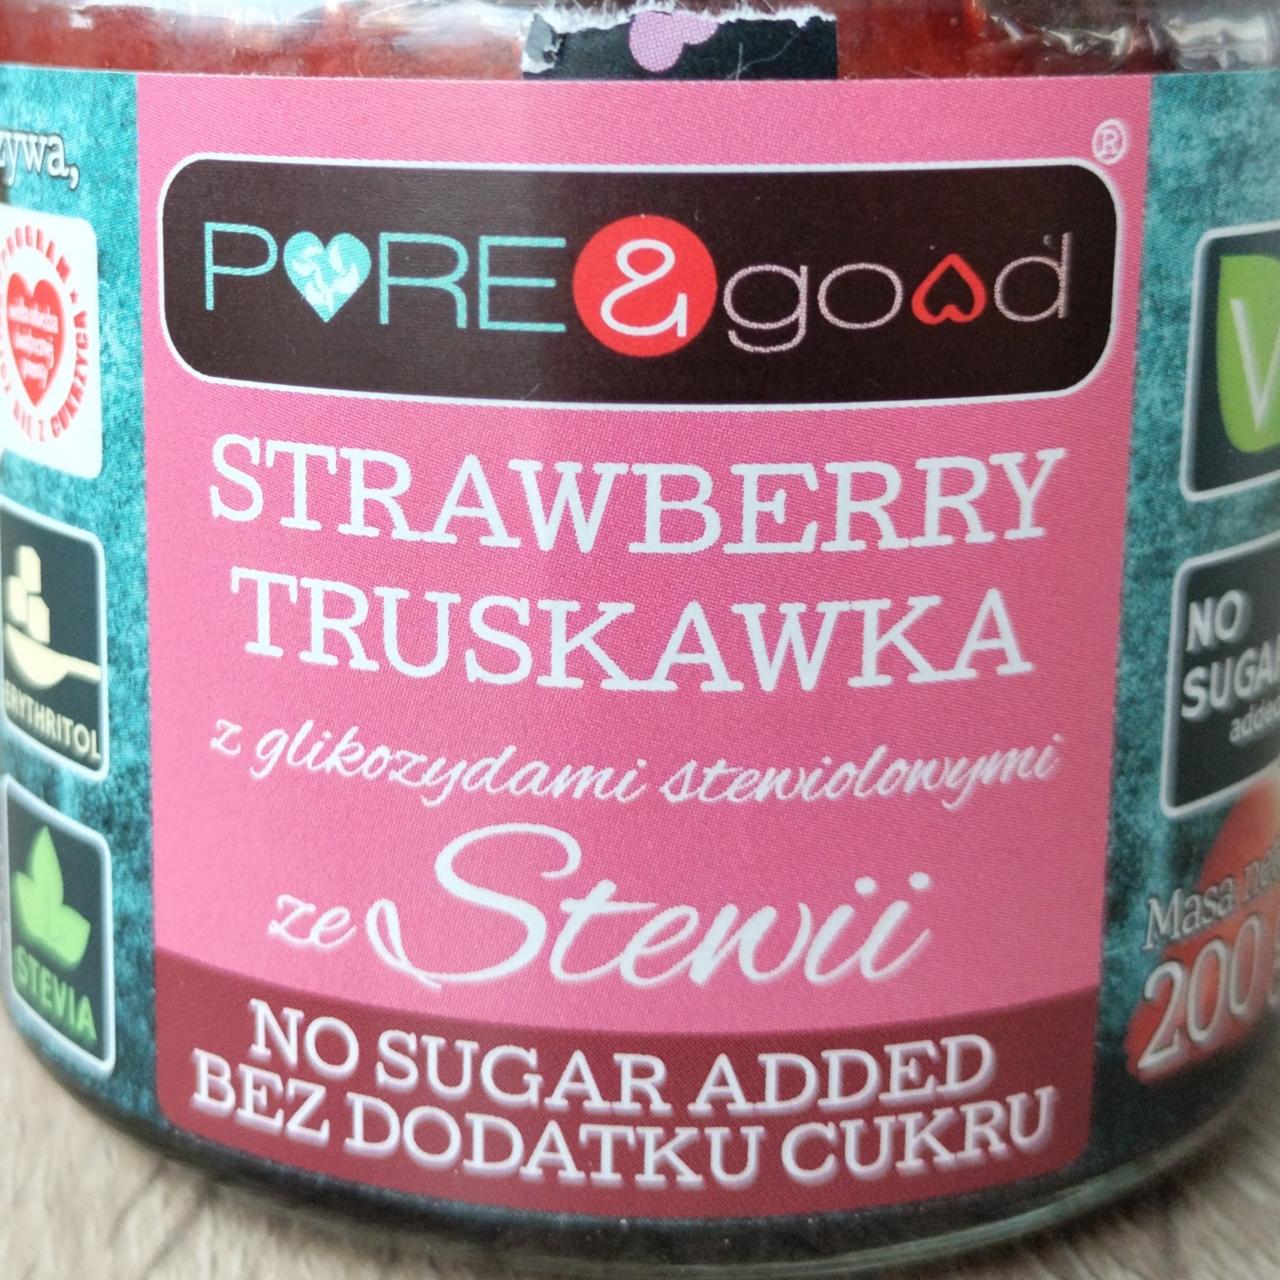 Zdjęcia - Truskawka z glikozydami stewiolowymi ze Stewii bez dodatku cukru Pure&Good